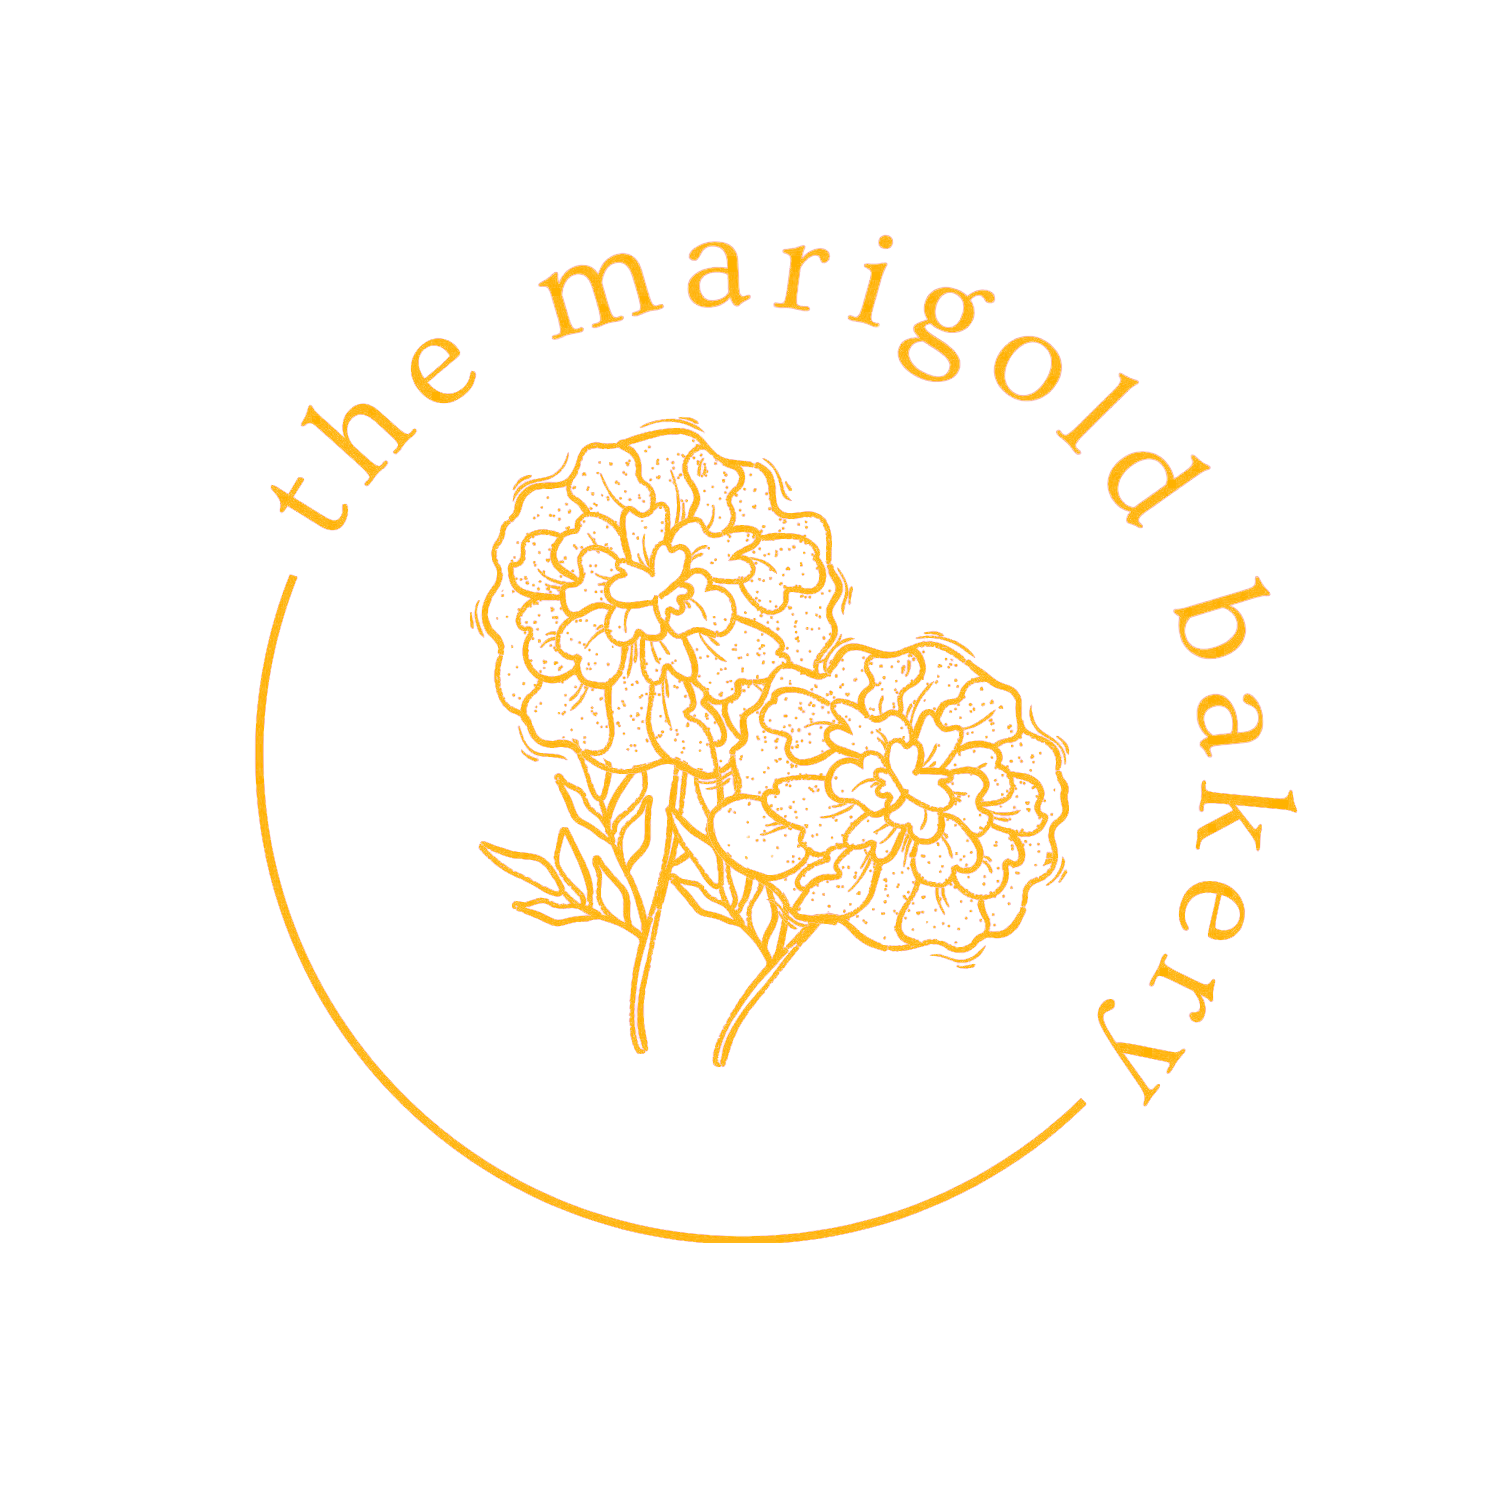 The Marigold Bakery